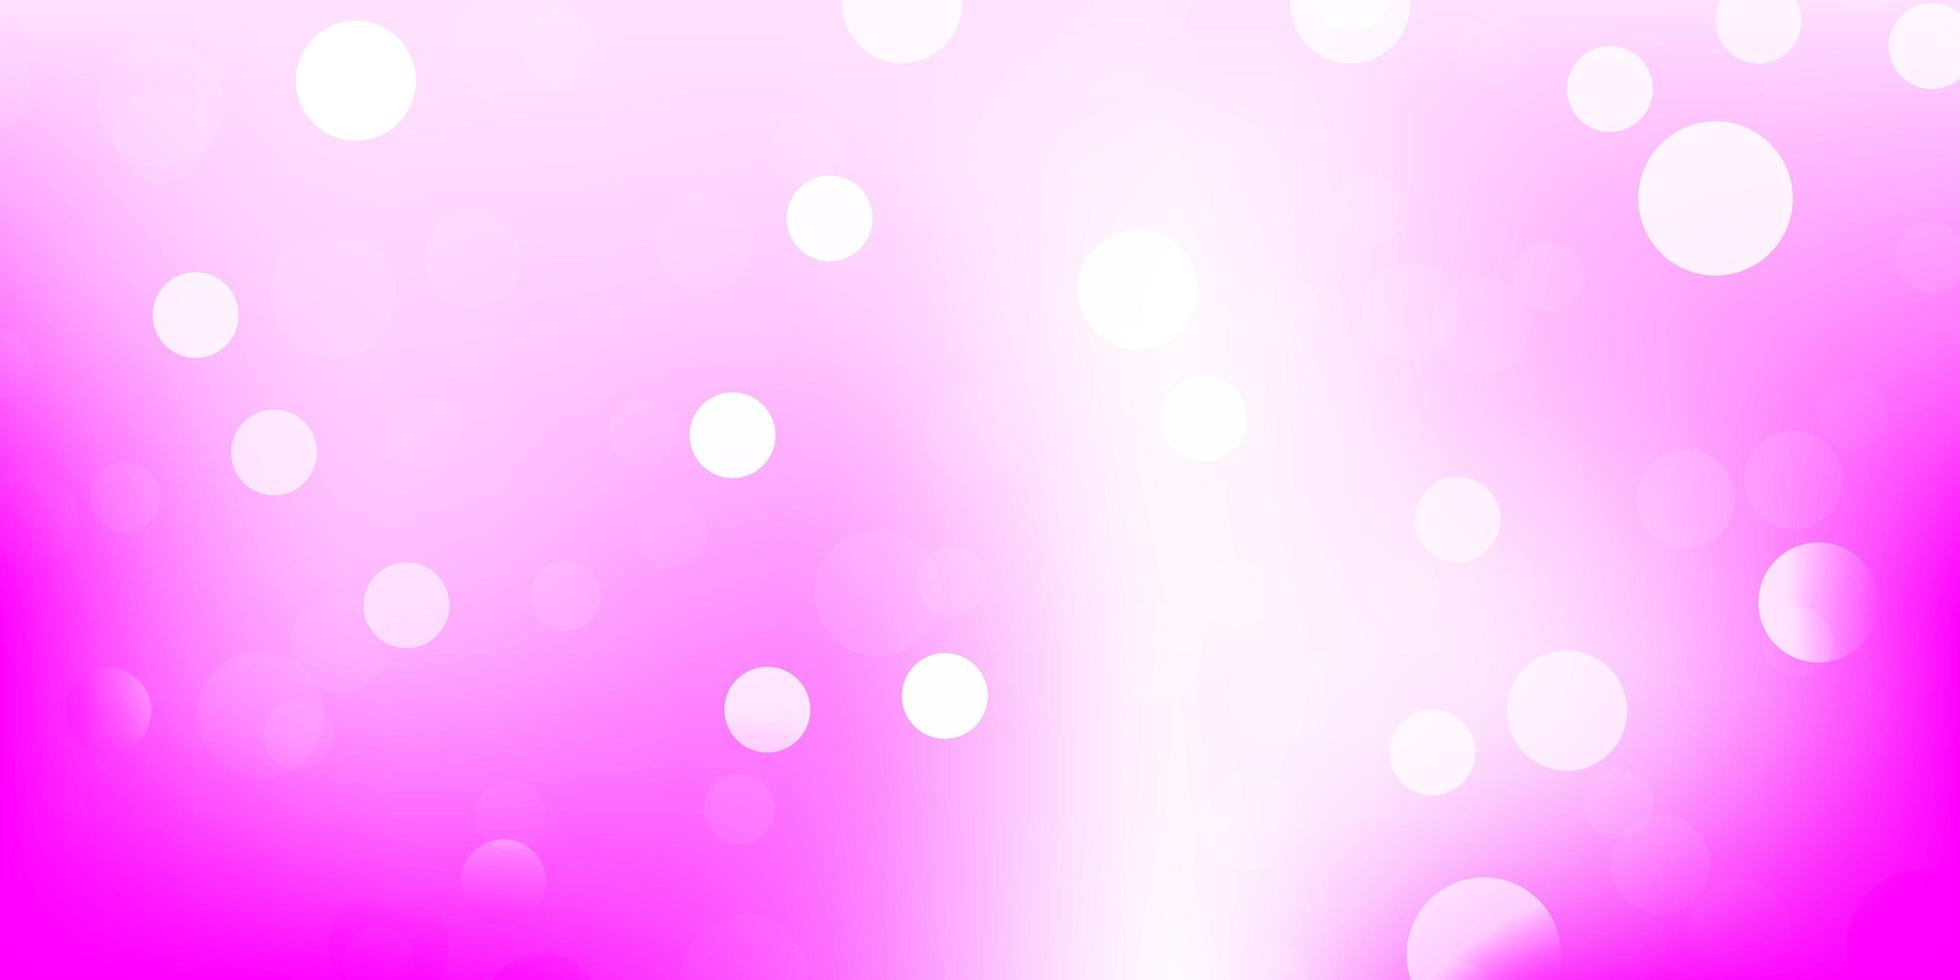 textura de vector rosa claro con discos.